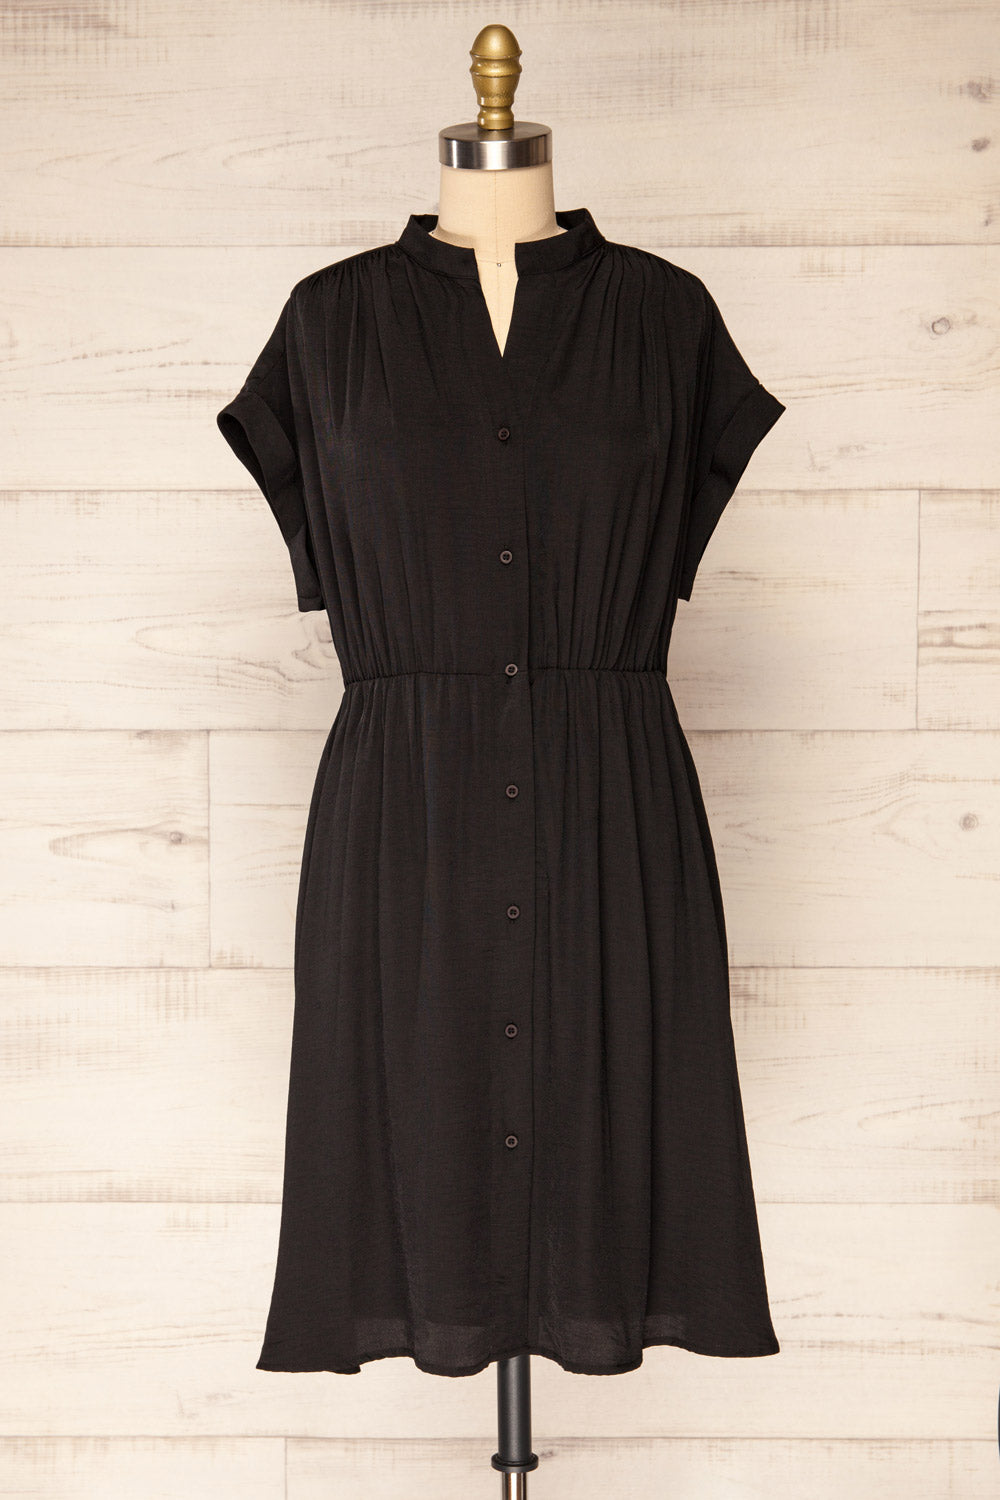 Yhoanis Black Button-Up Short Dress | La petite garçonne front view